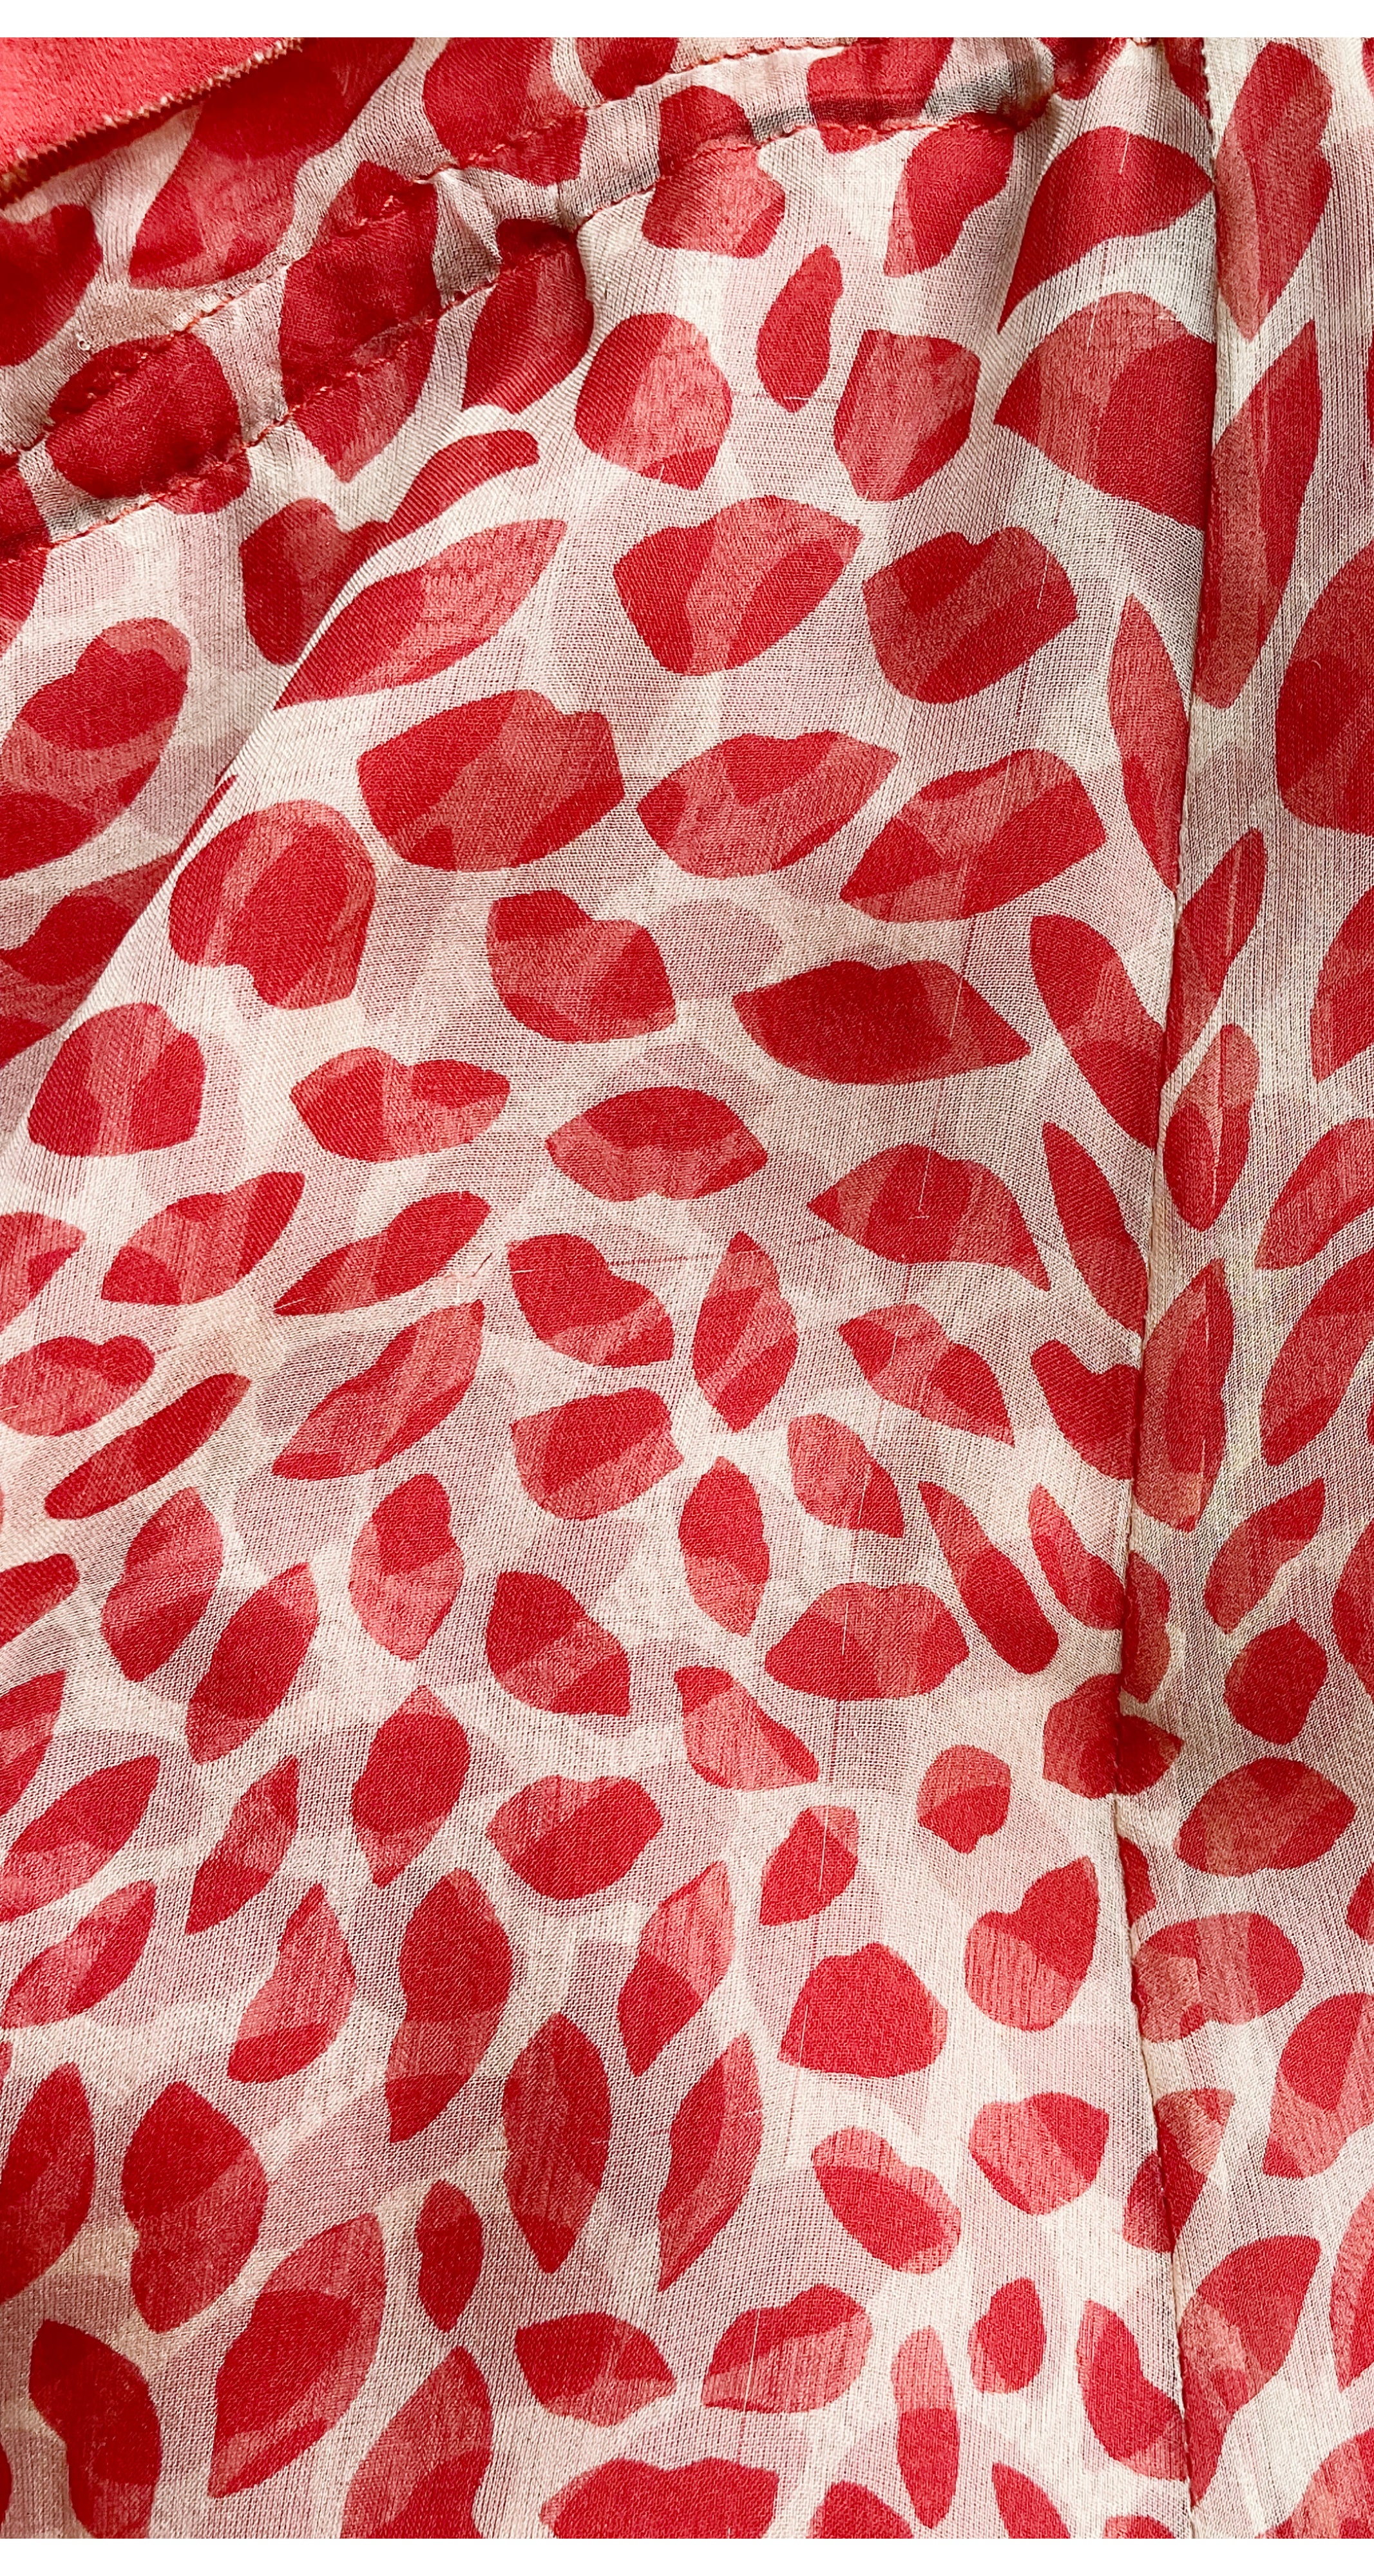 2004 Iconic Lips Novelty Print Silk Chiffon Skirt